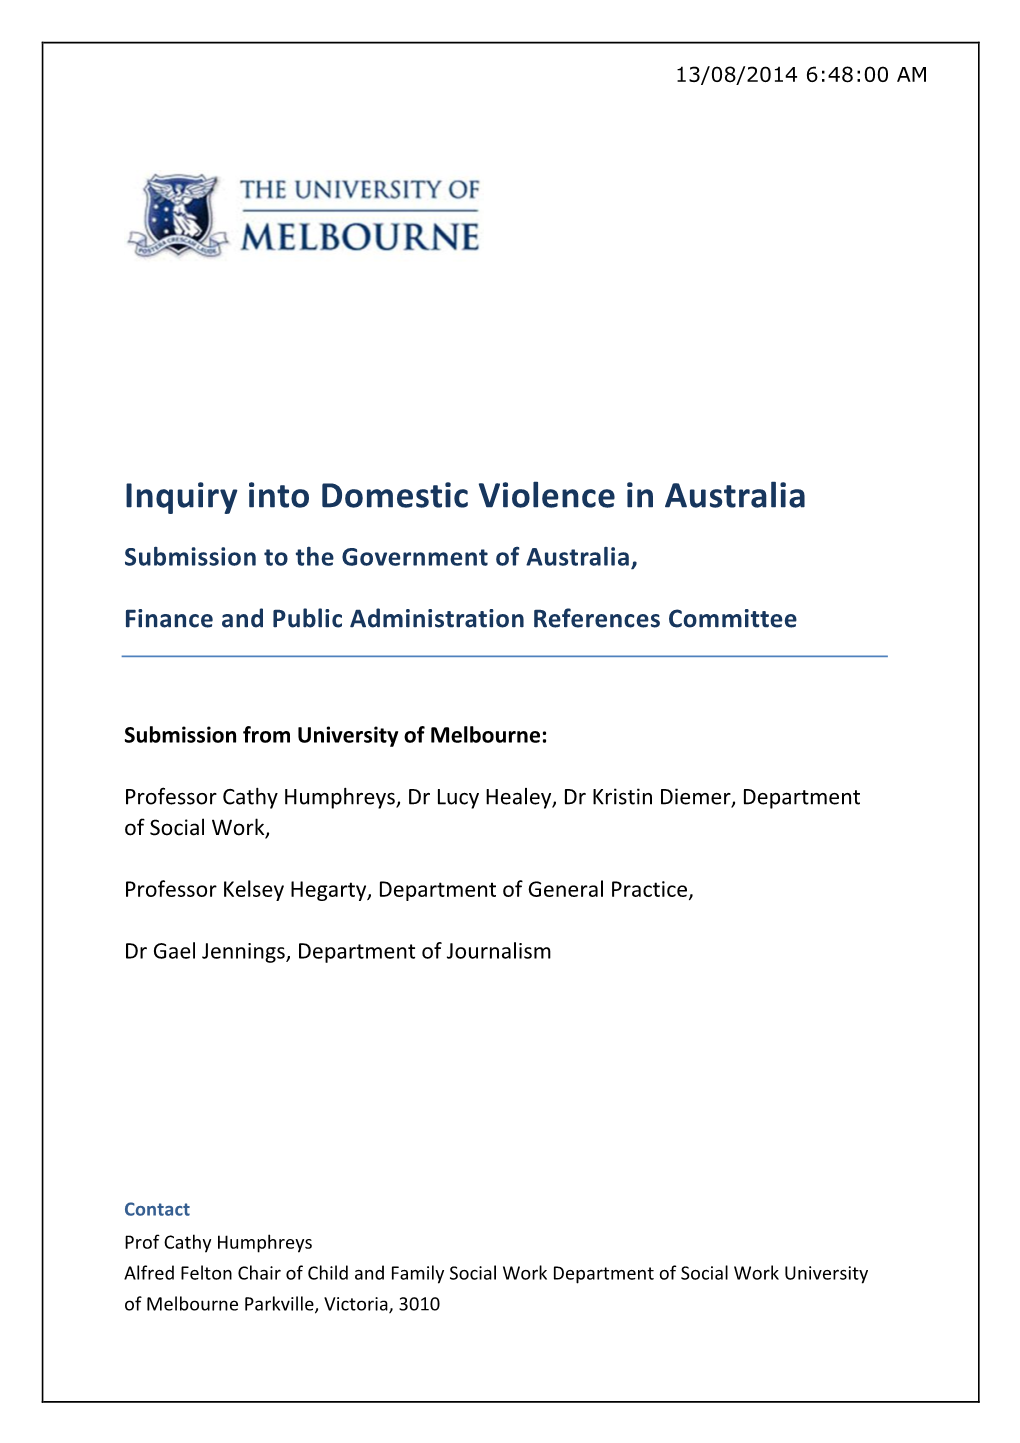 Inquiry Into Domestic Violence in Australia